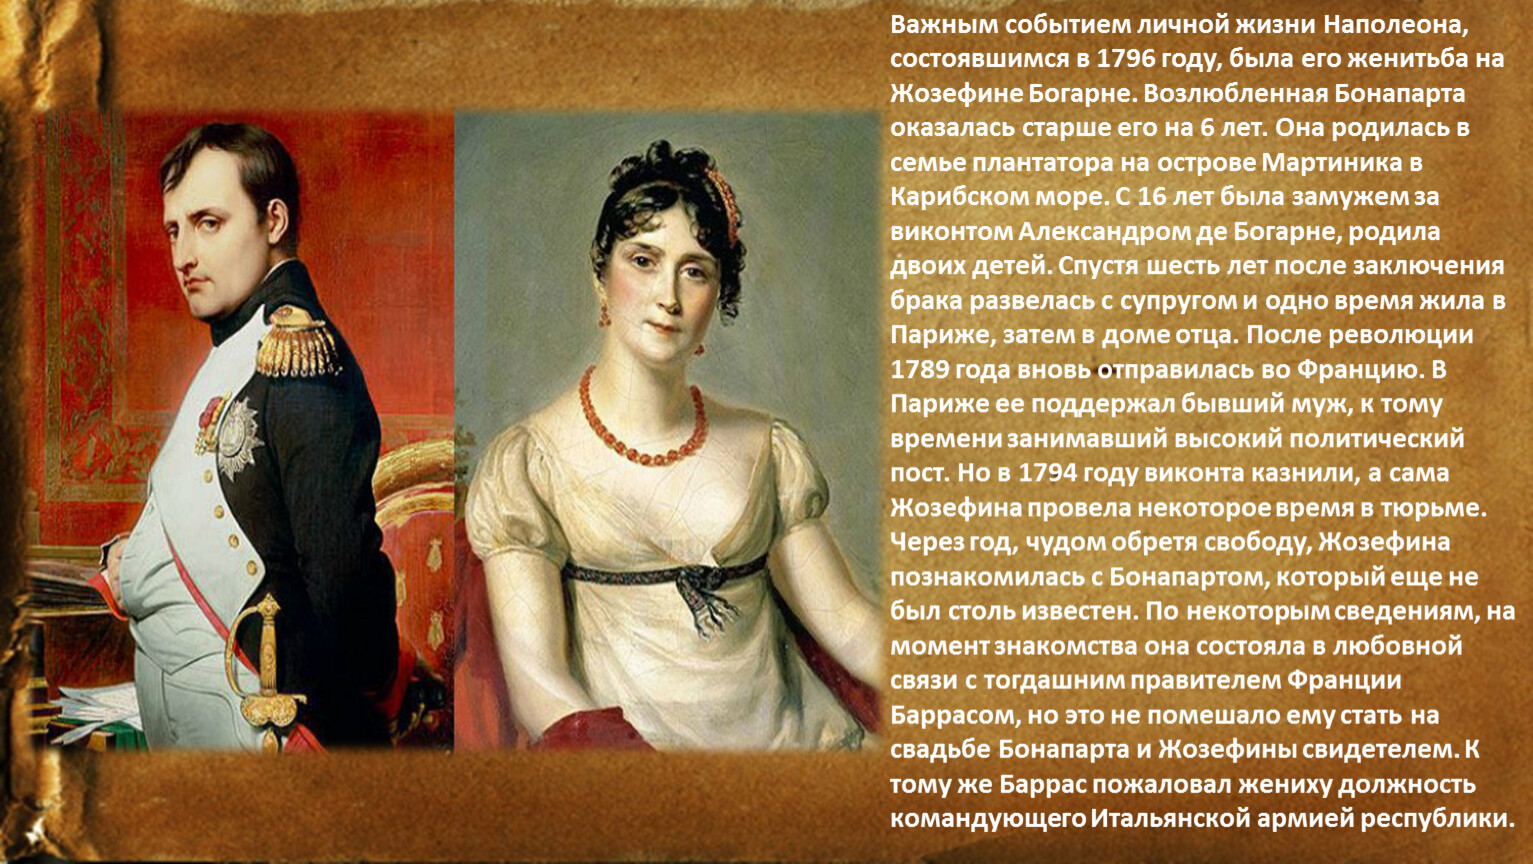 Наполеон сватался к сестре Александра 1